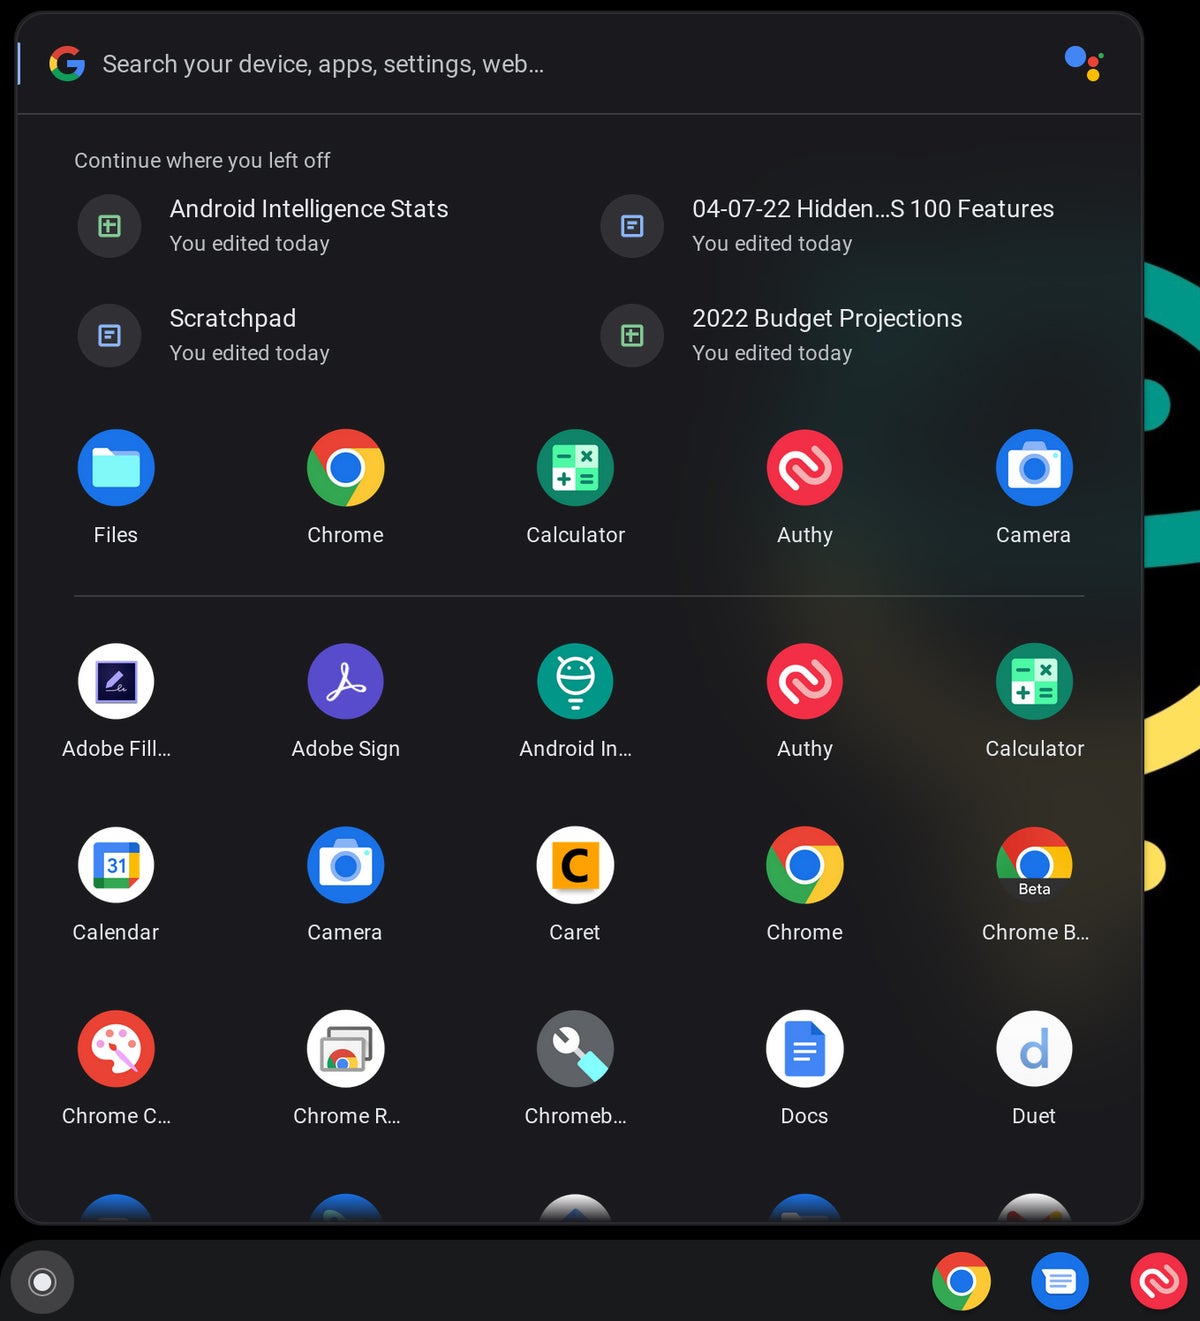 Chrome OS: Launcher